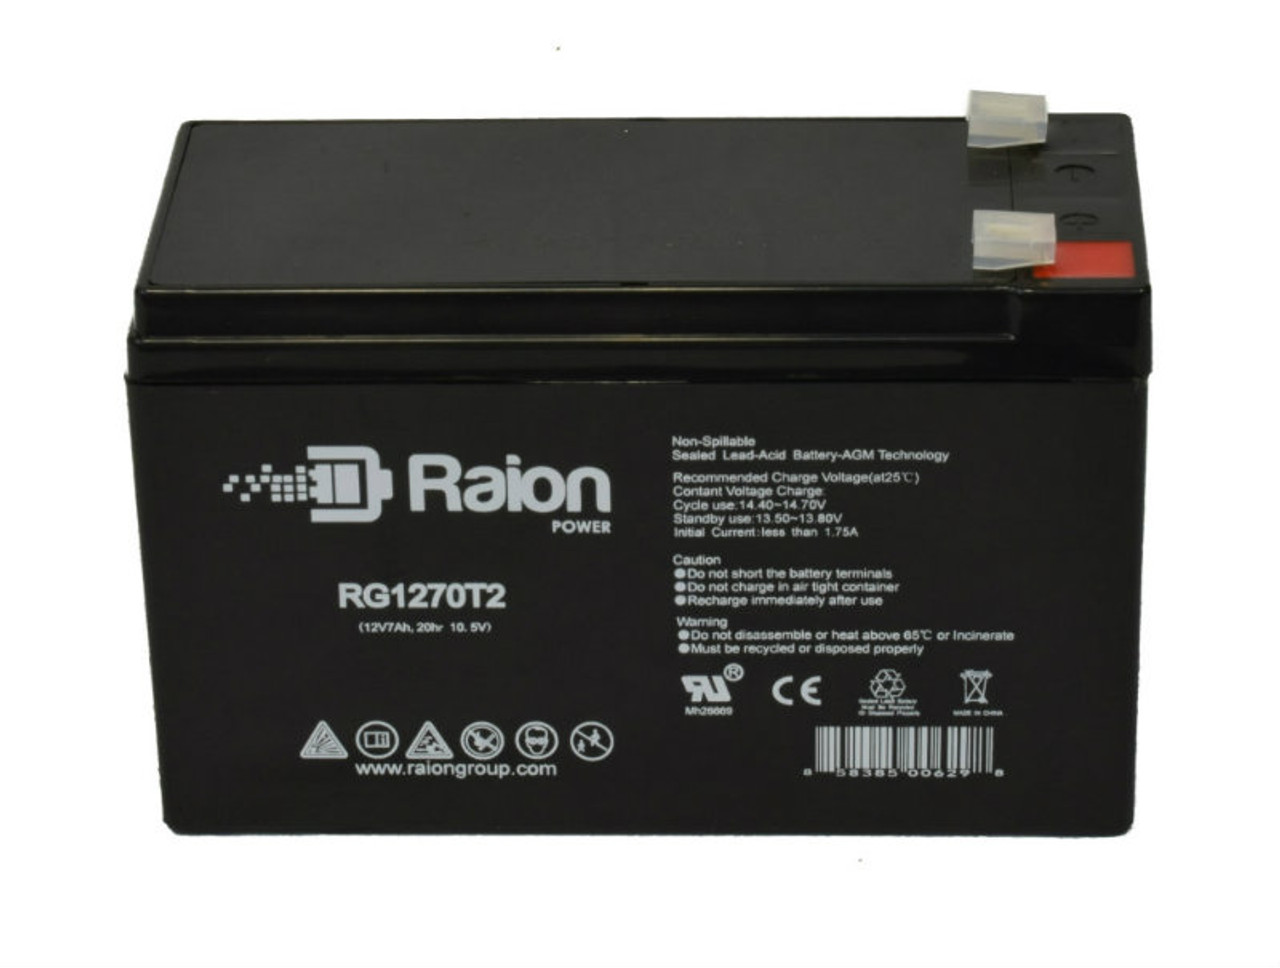 Raion Power RG1270T1 12V 7Ah Lead Acid Battery for Ocean NP7-12 F1